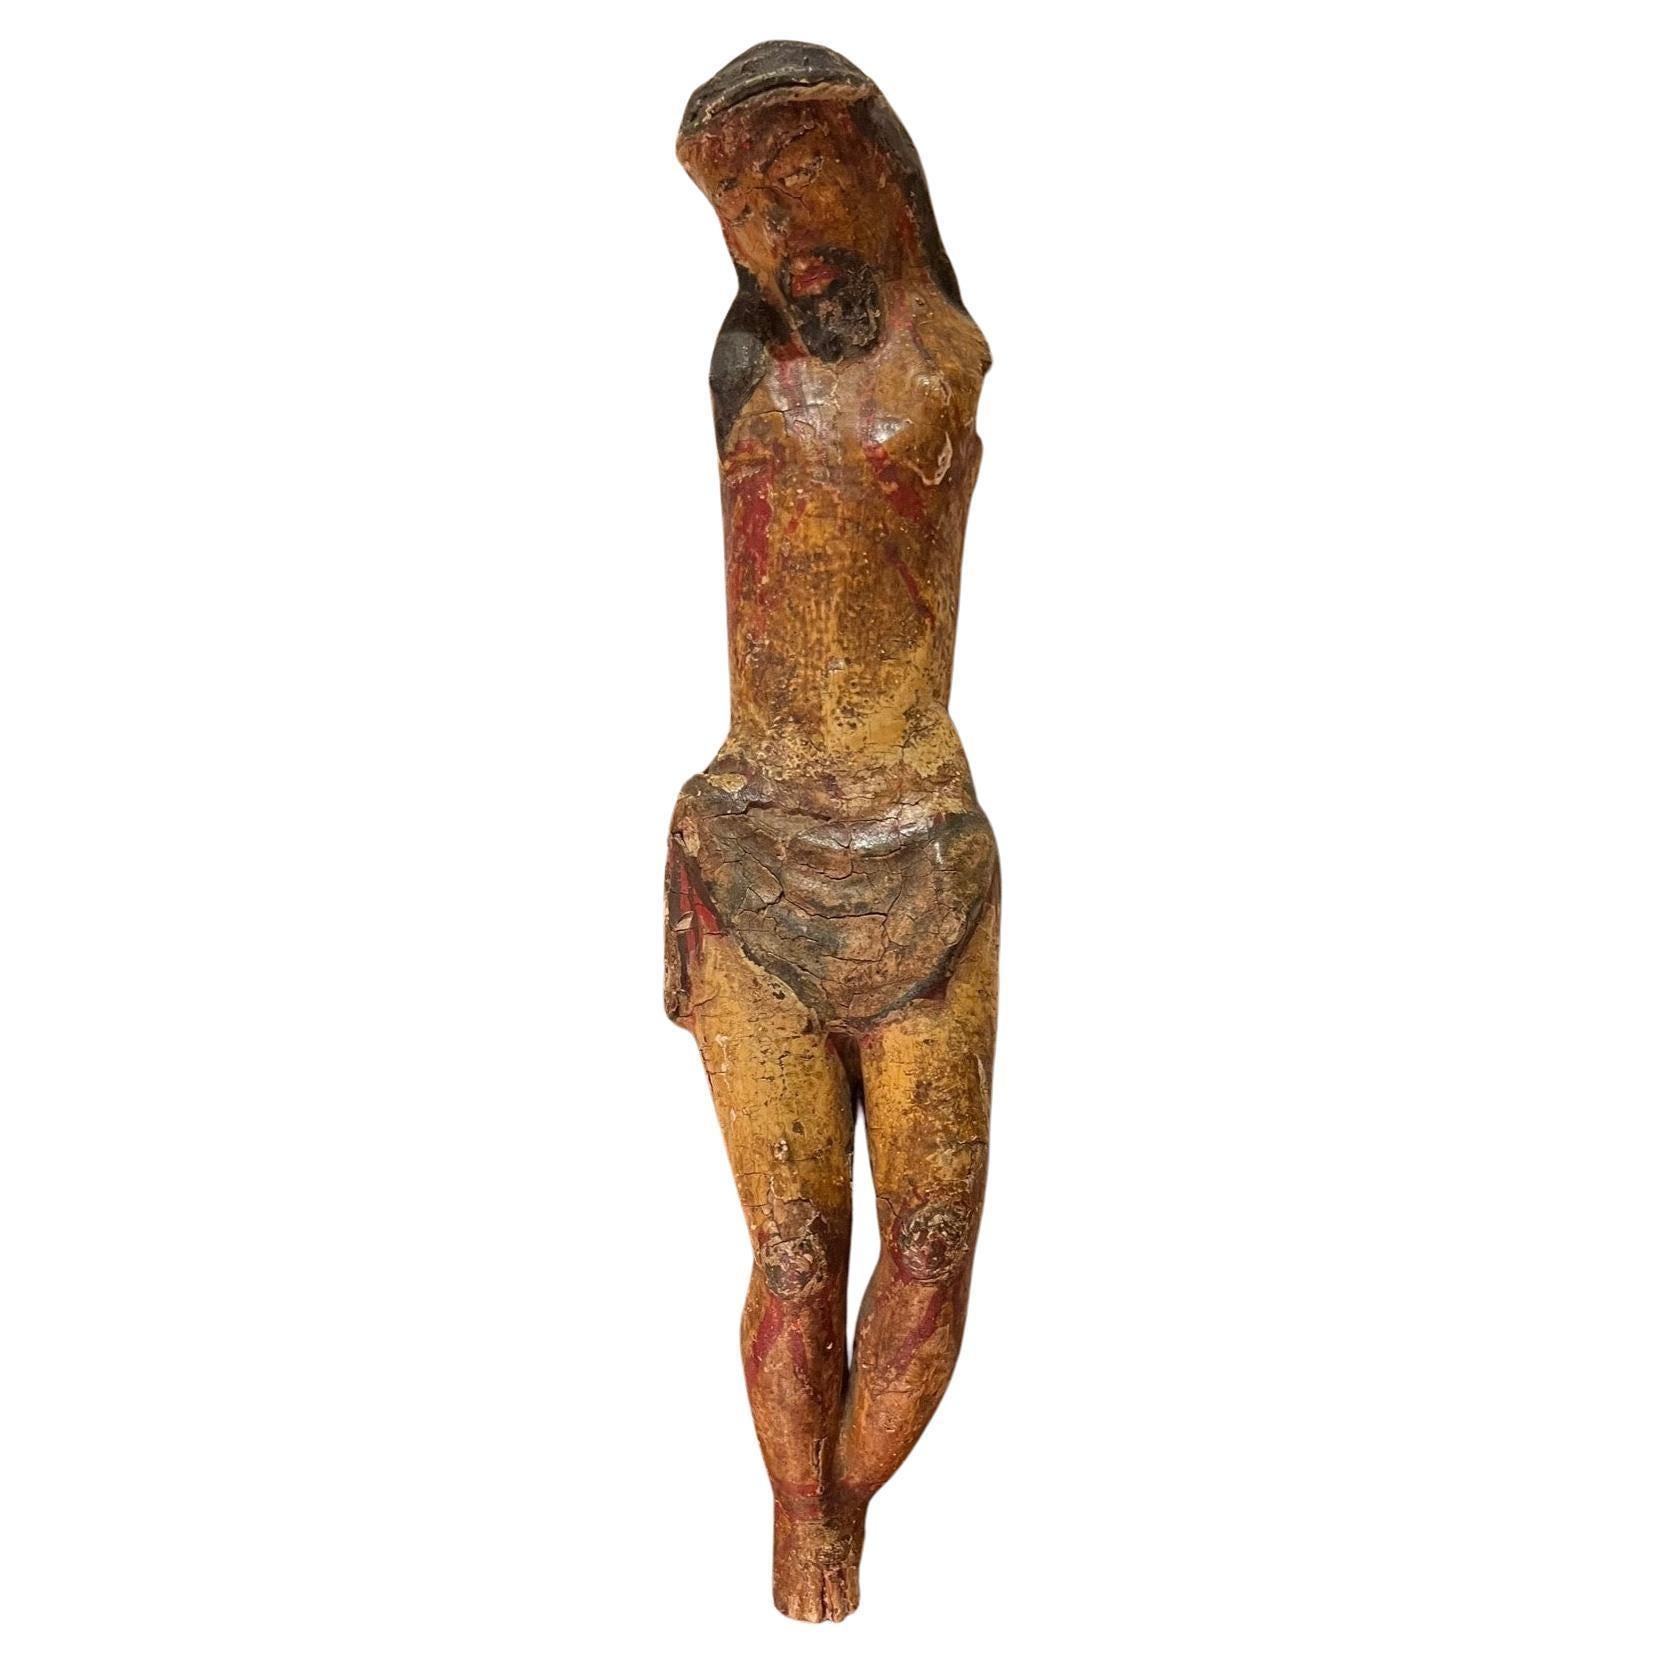  Holzgeschnitzte polychrome Holzskulptur des Corpus Christi aus der Periode des 13. Jahrhunderts

Seltene und schöne Skulptur von Corpus Christi. Das Kunstwerk, das wahrscheinlich aus Deutschland stammt, ist aus Hartholz geschnitzt. Diese